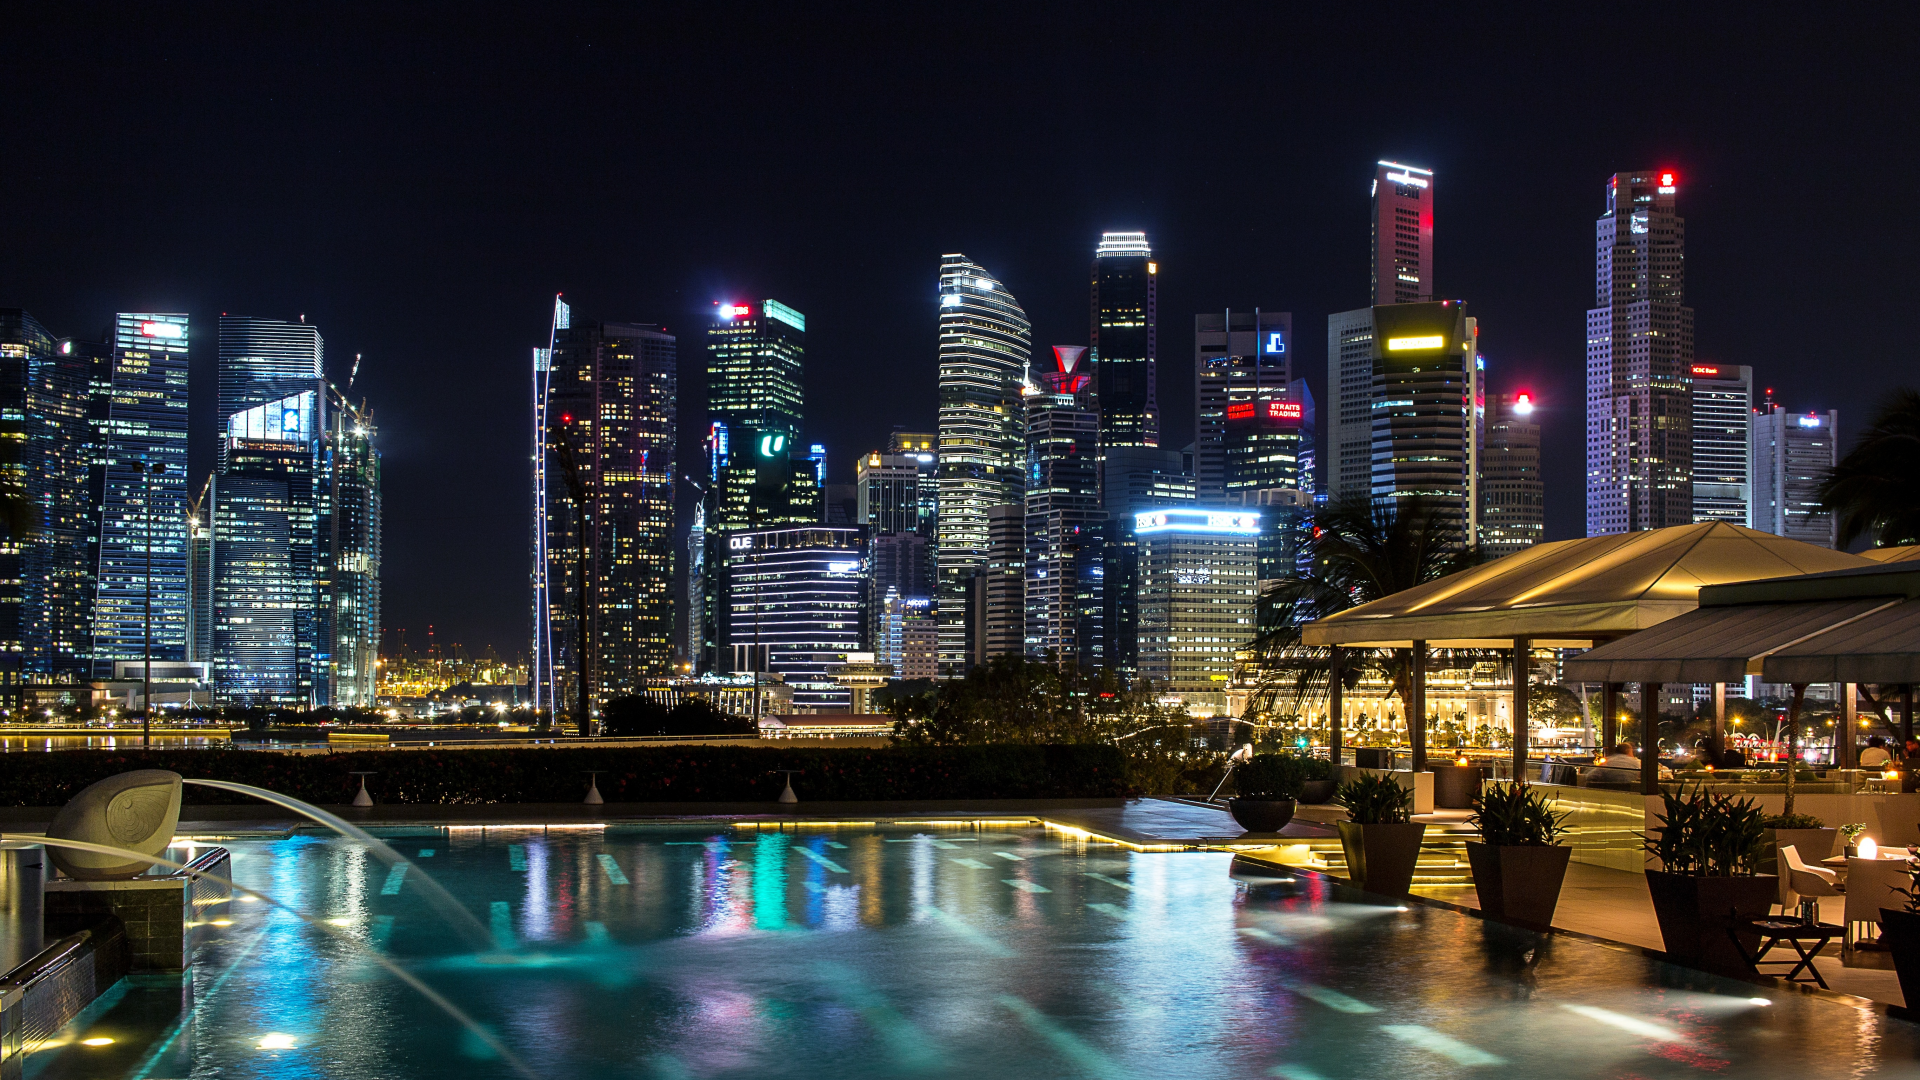 сингапур, световое шоу, ночь, небоскребы, singapore, lightshow, night, skyscrapers, night, light, dark, sun, sky, nice, wide